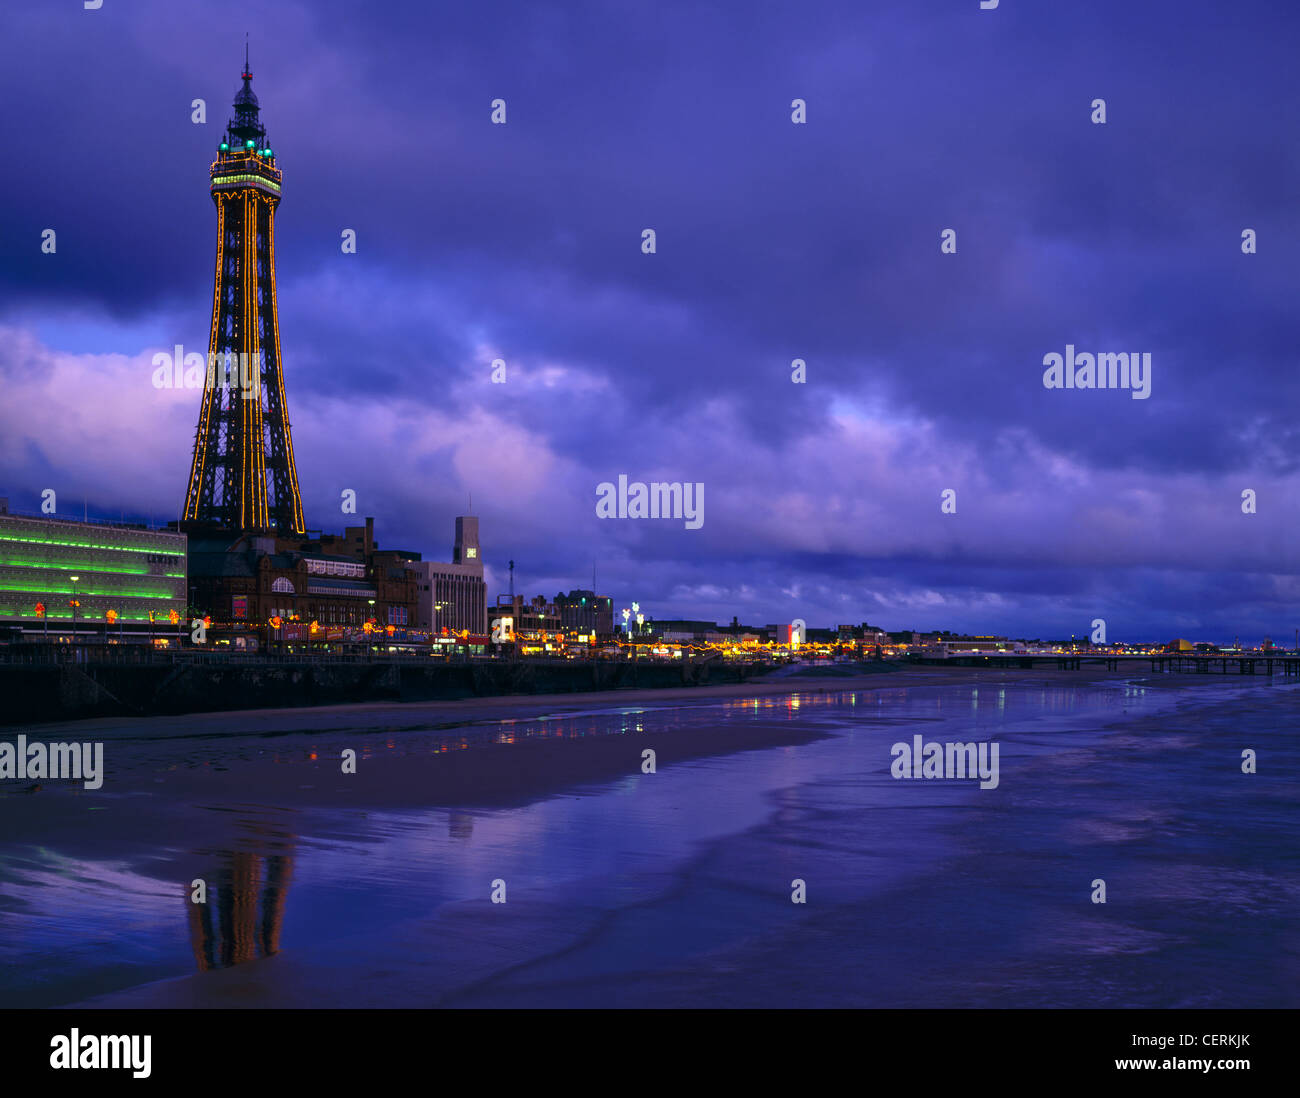 Réflexions sur la plage de Blackpool Illuminations. Banque D'Images